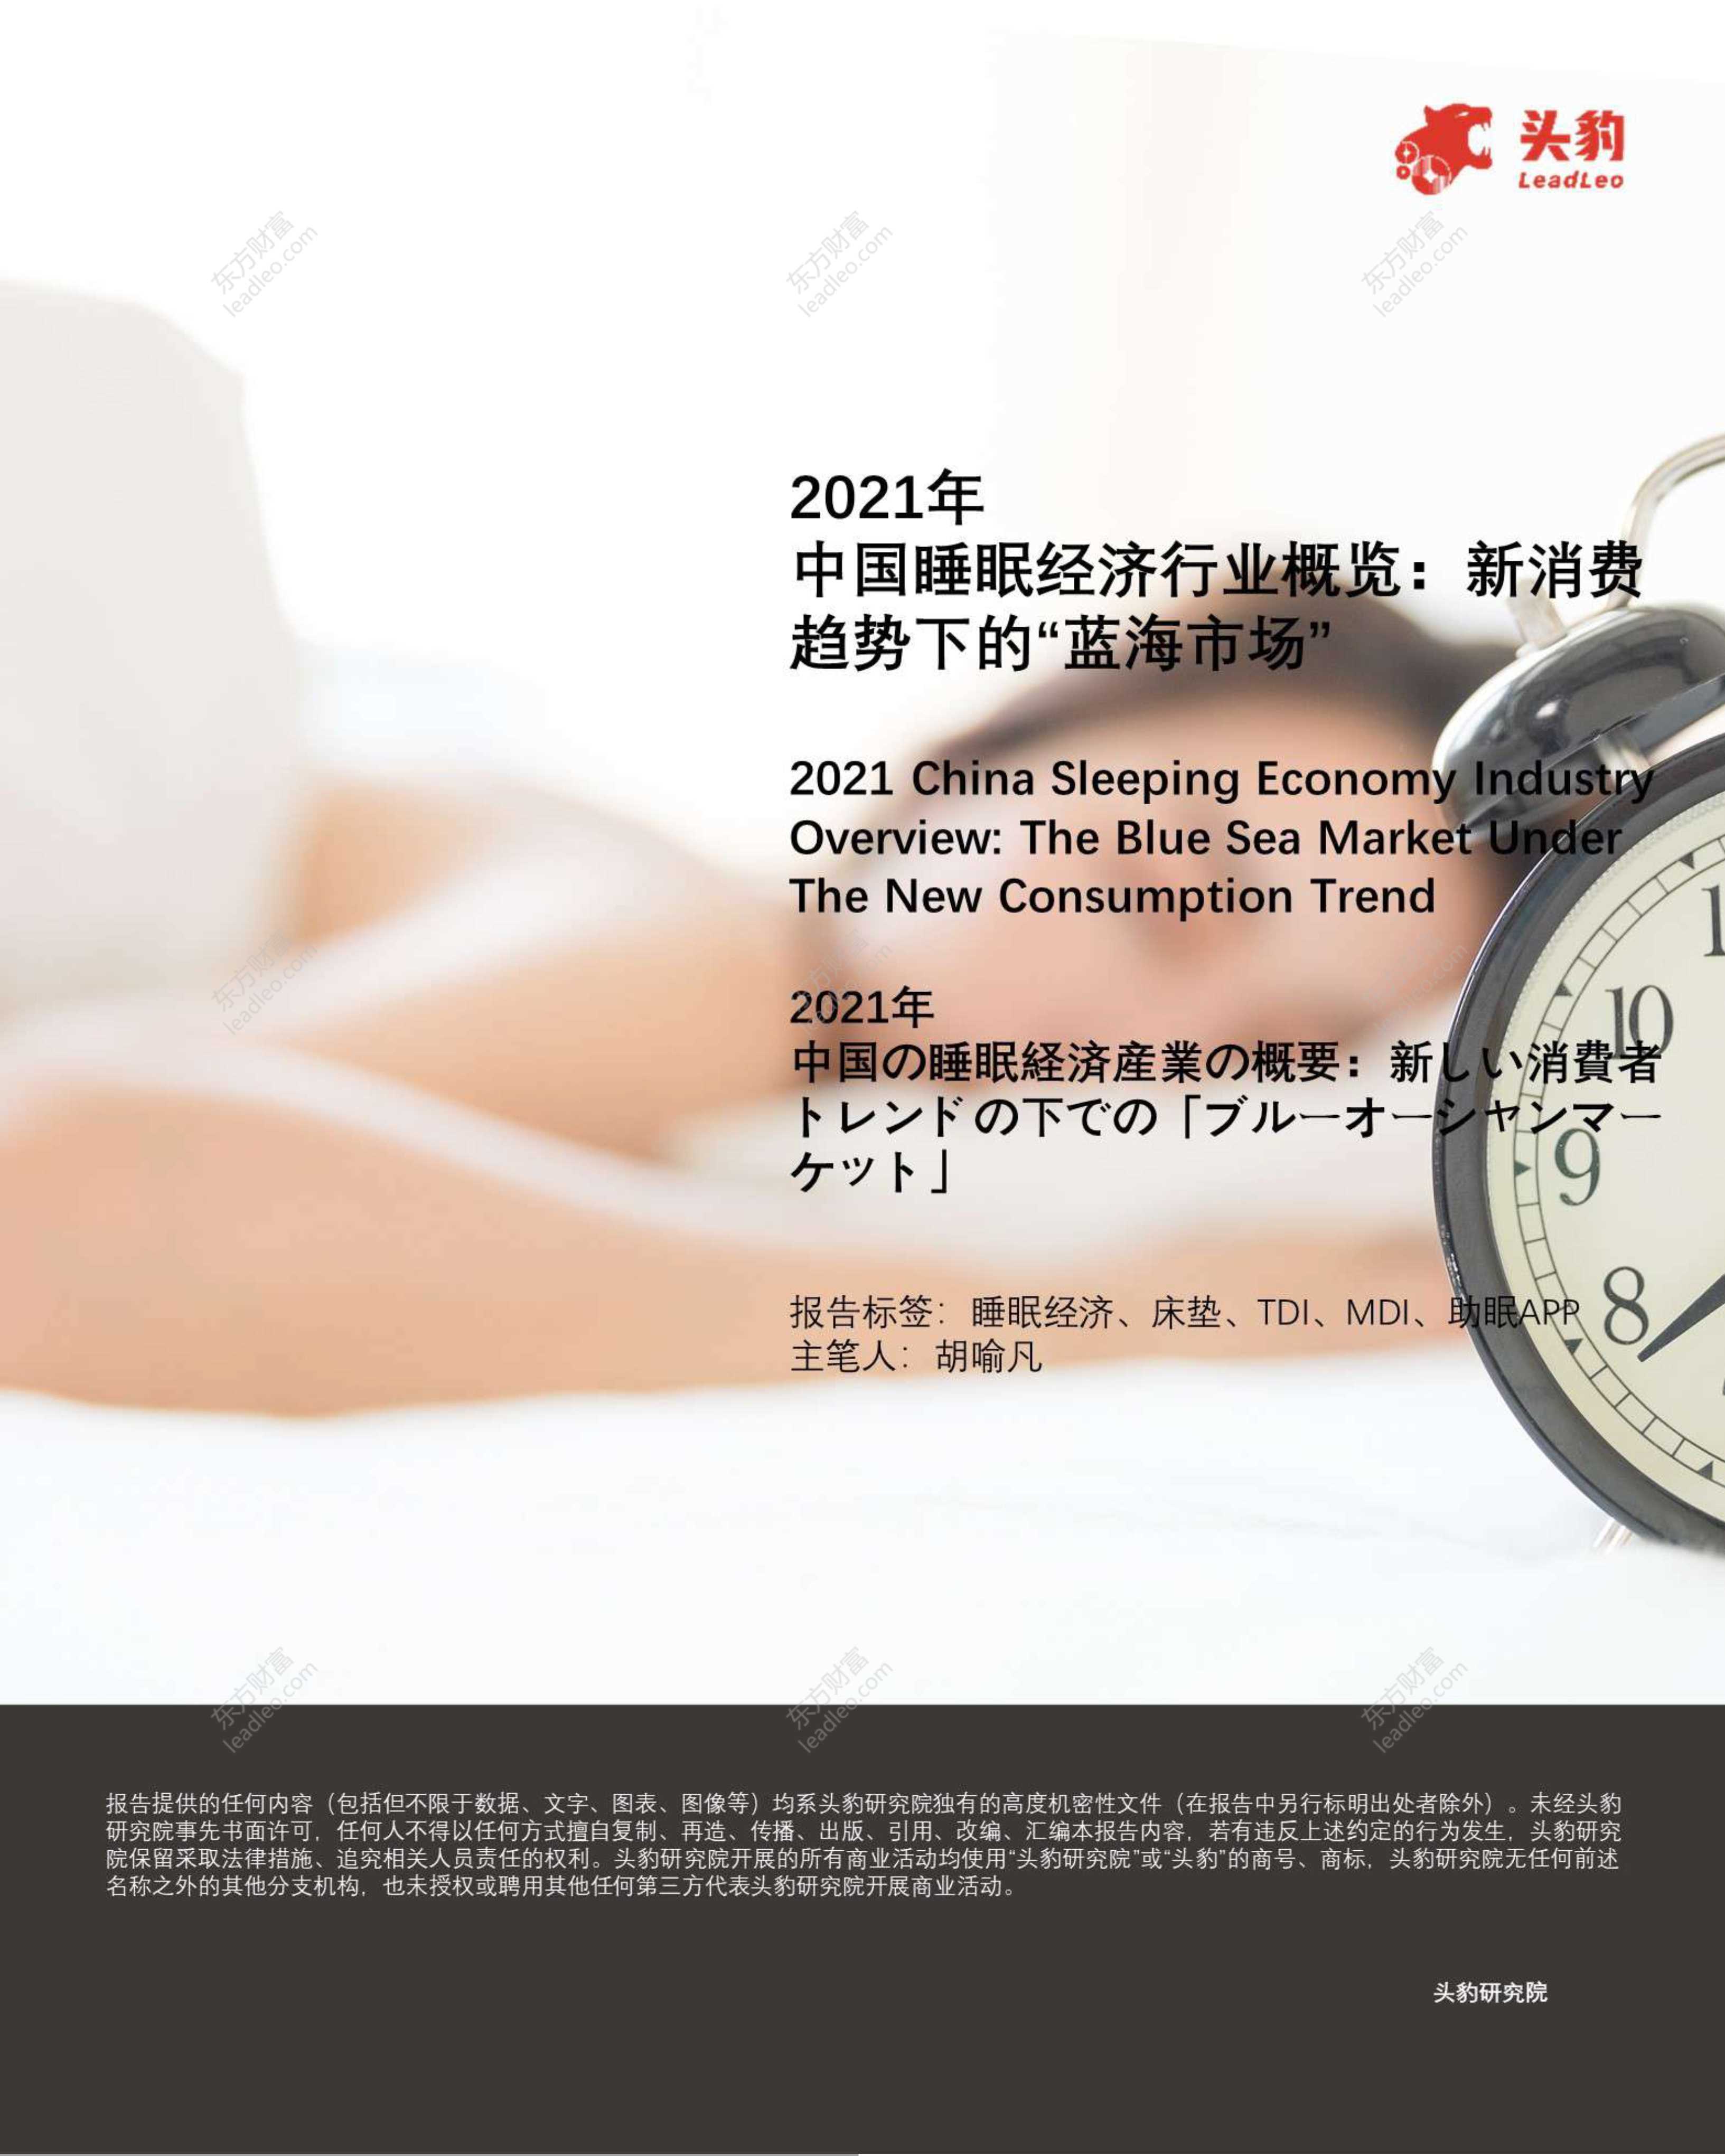 头豹研究院-2021年中国睡眠经济行业概览：新消费趋势下的“蓝海市场”-2021.10-36页